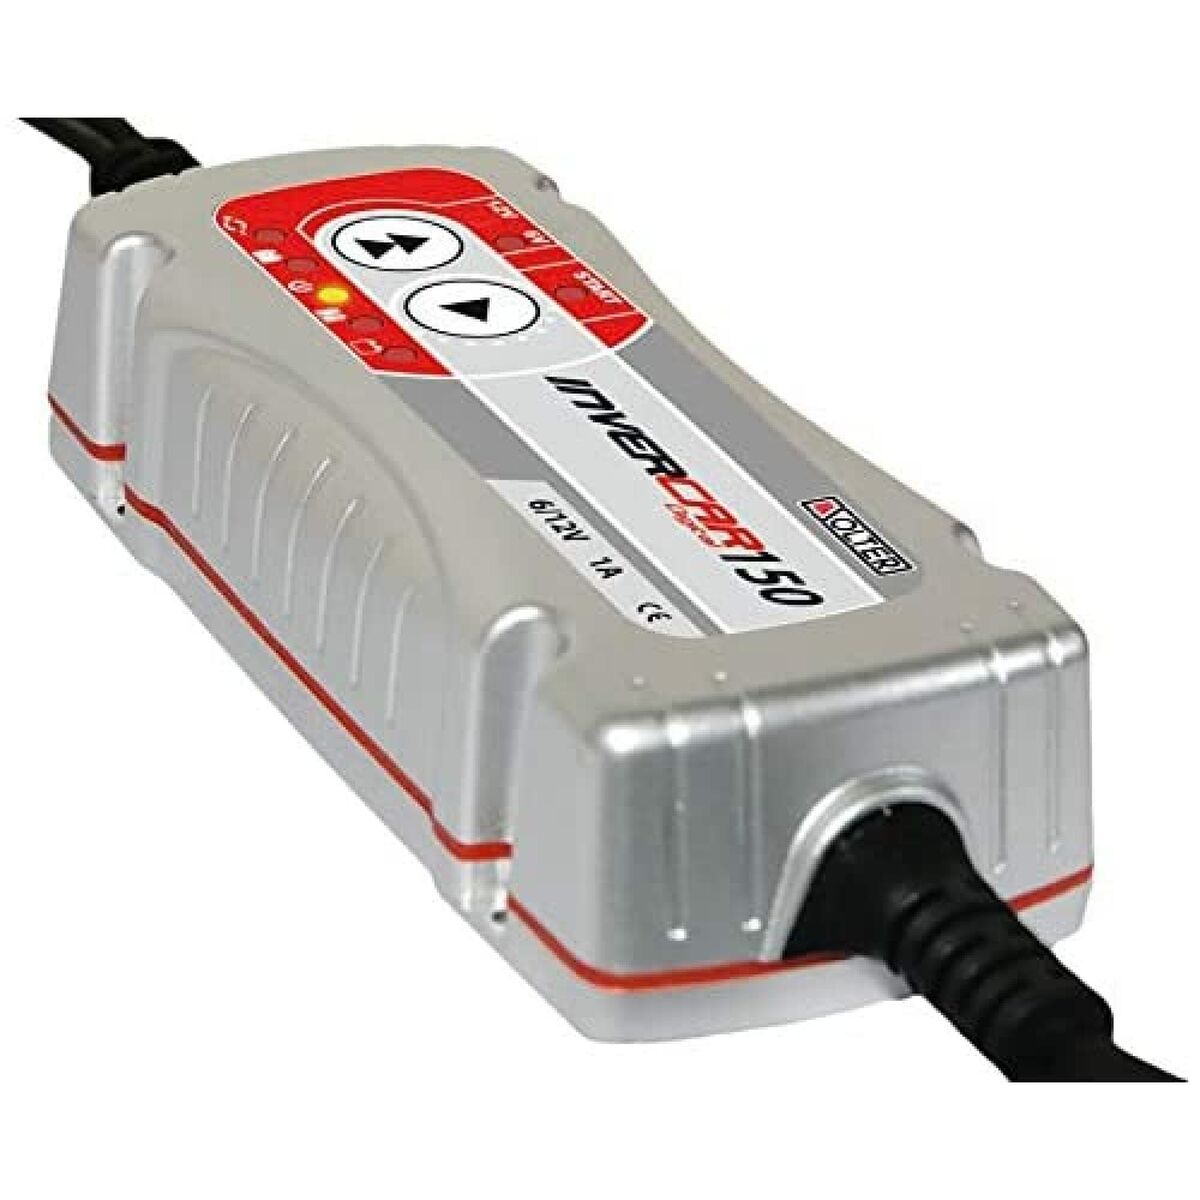 Cargador 12v 1A baterias litio recargables